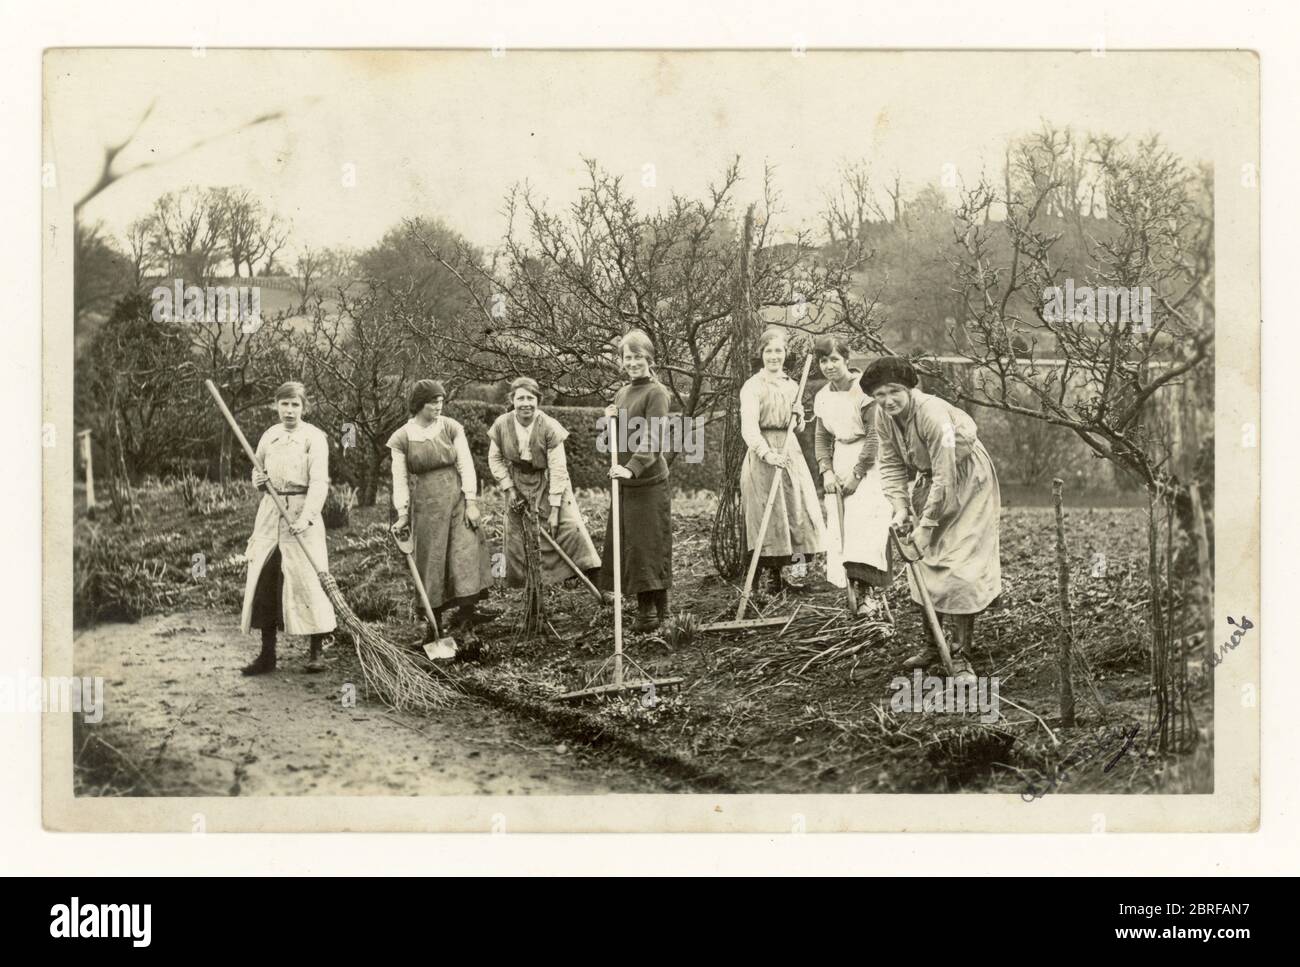 Carte postale de l'époque de la première Guerre mondiale, des filles terriennes creusant un terrain, préparant le sol pour planter des légumes ou des buissons de fruits, éventuellement dans un verger, ou dans un parc, afin d'aider l'effort de guerre, Royaume-Uni vers 1916 Banque D'Images